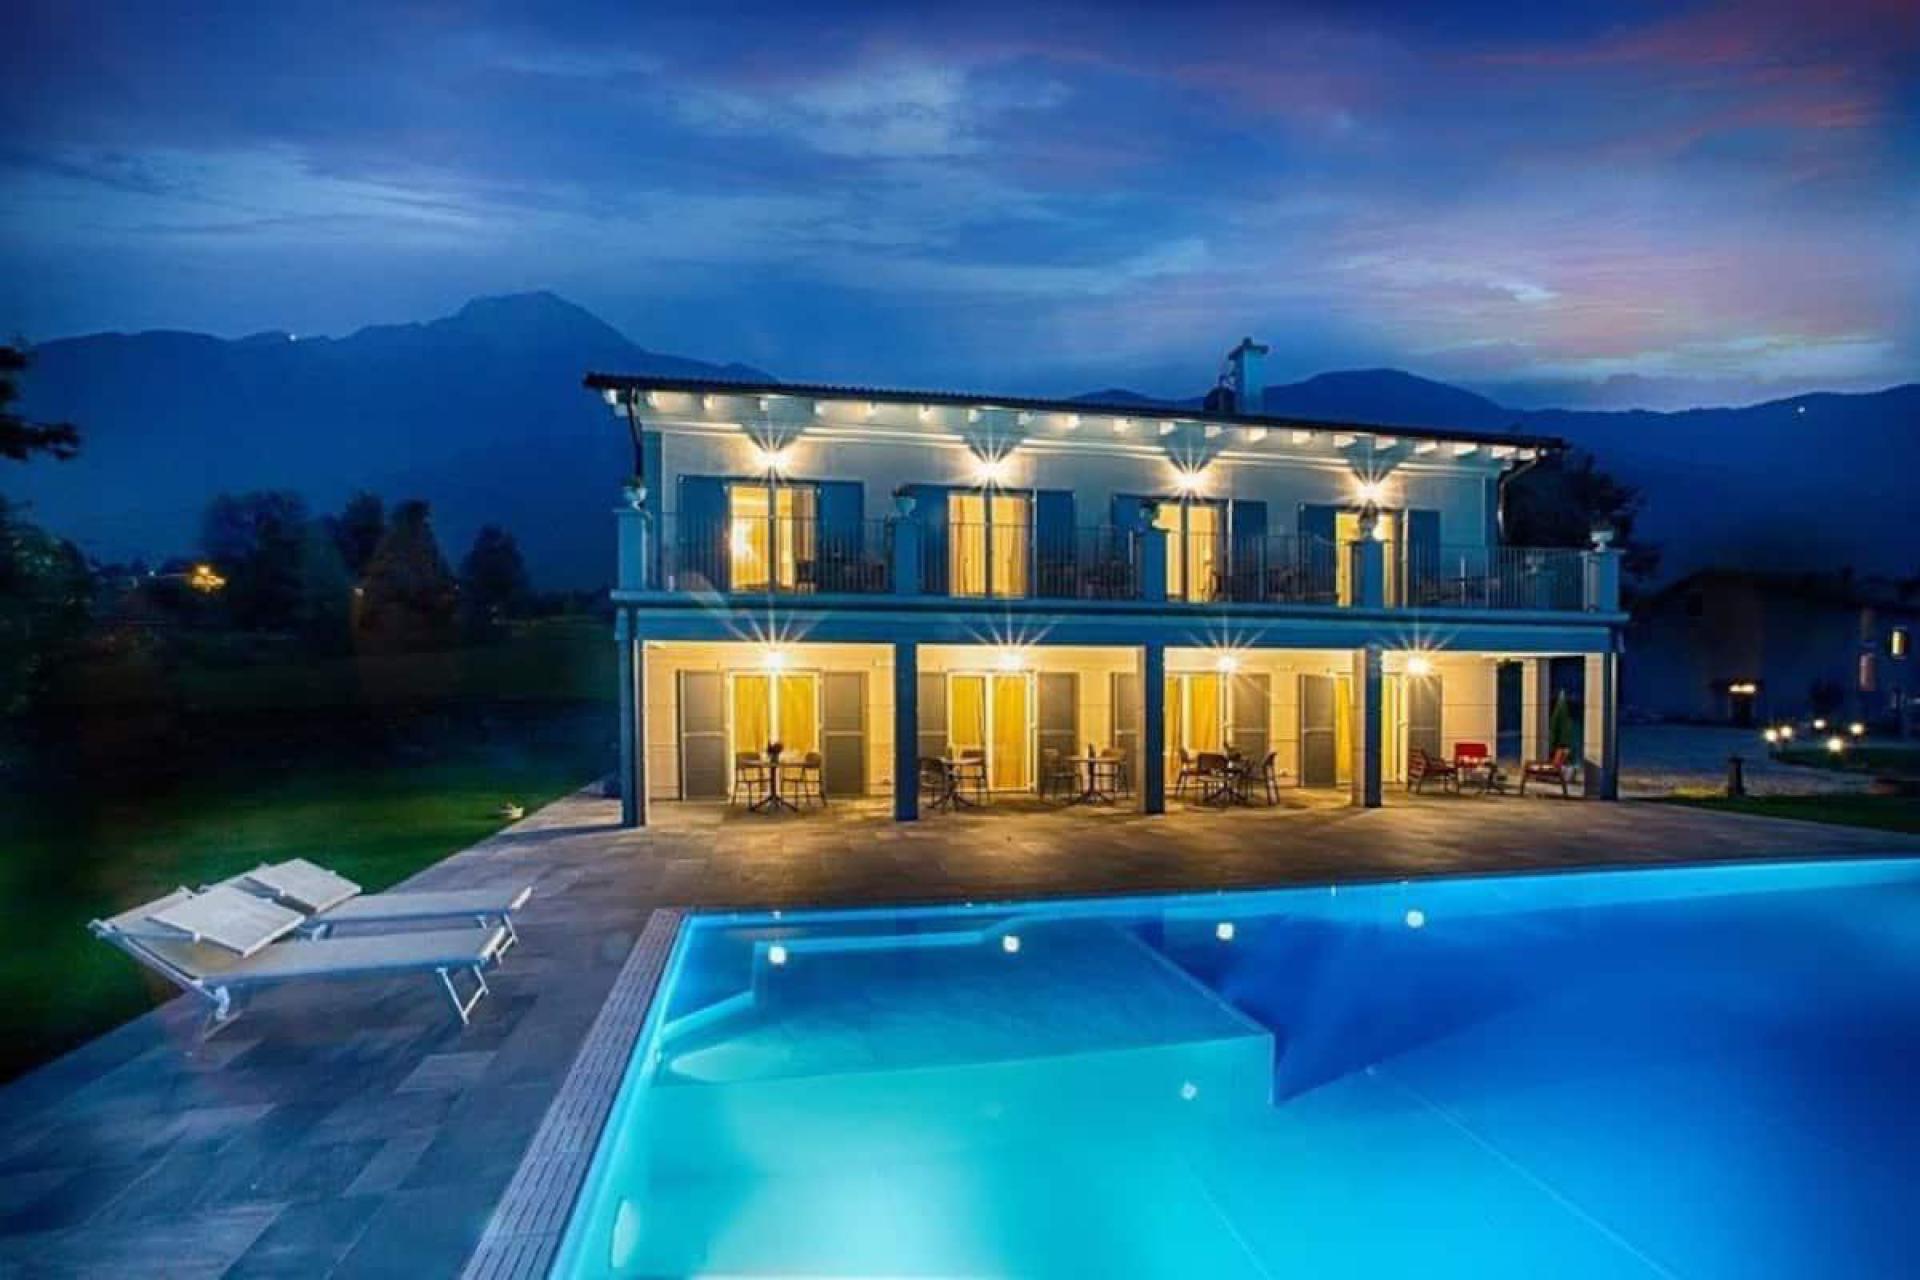 Agriturismo Lake Como and Lake Garda Luxury B&B within walking distance of Lake Como